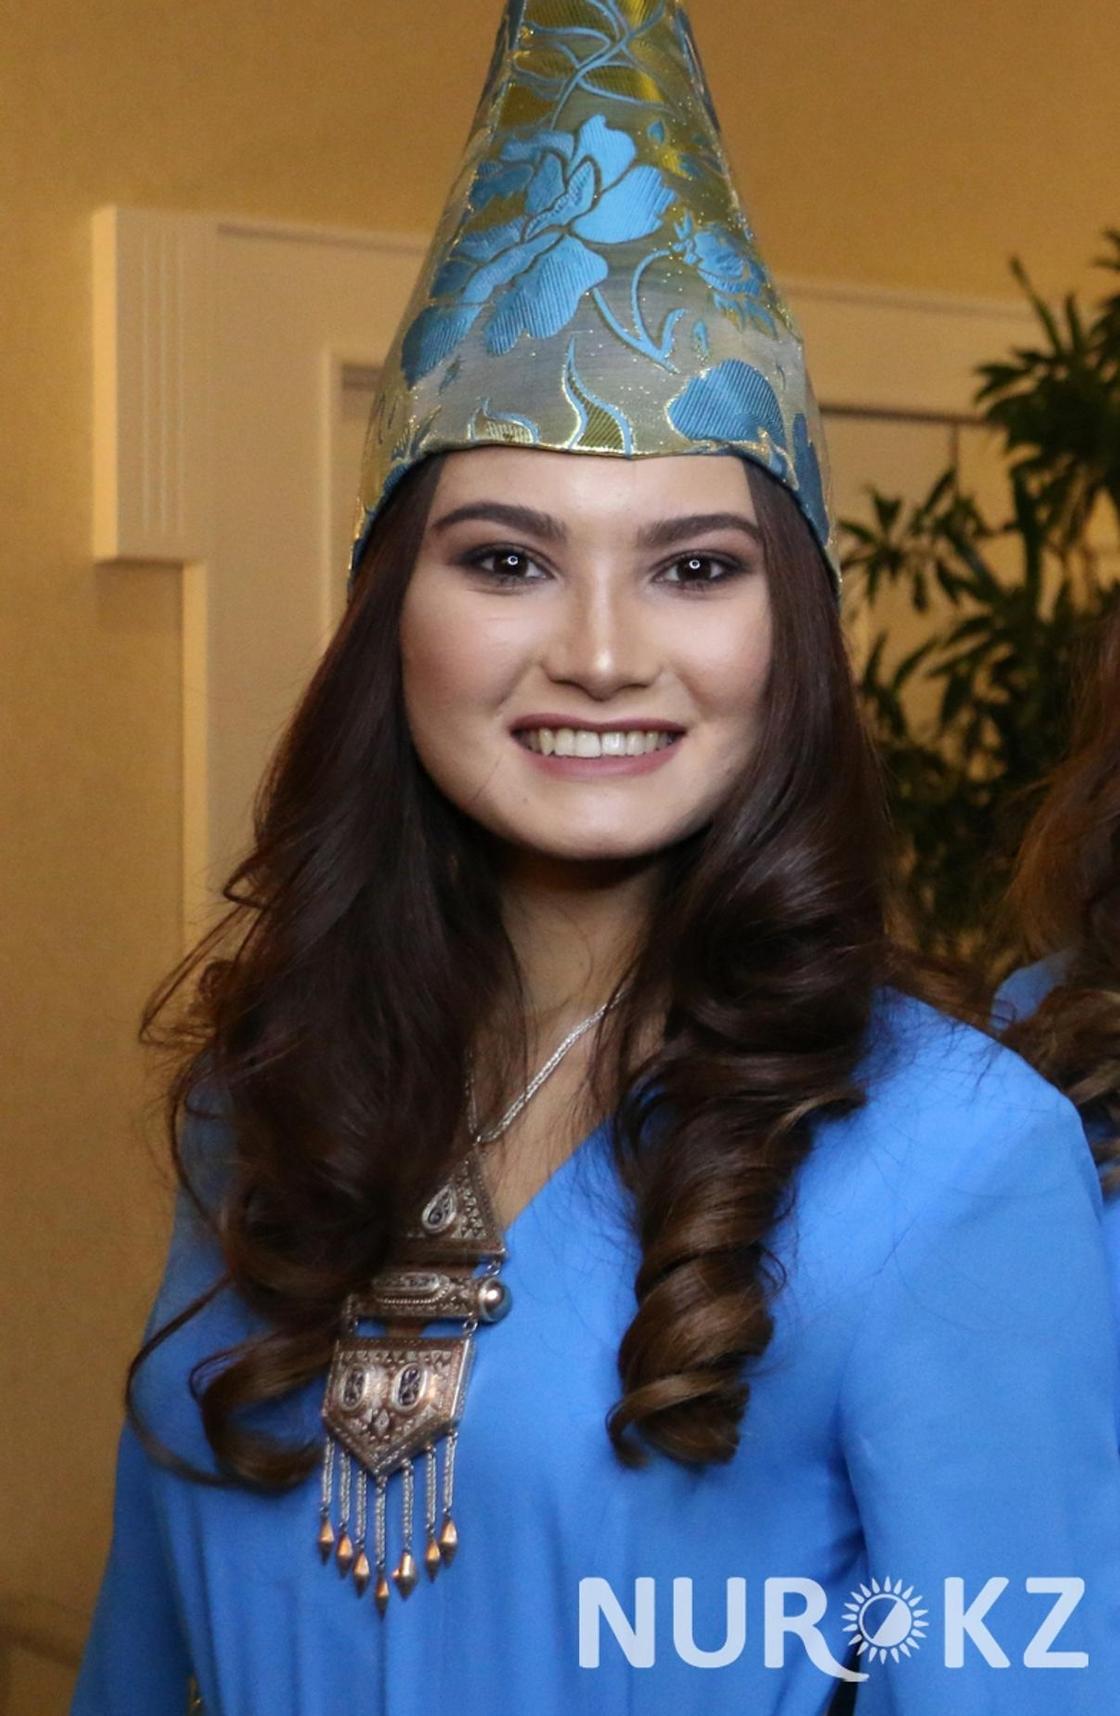 Проводник поезда и школьница: в столице показали красоток «Мисс Астана-2018» (фото)